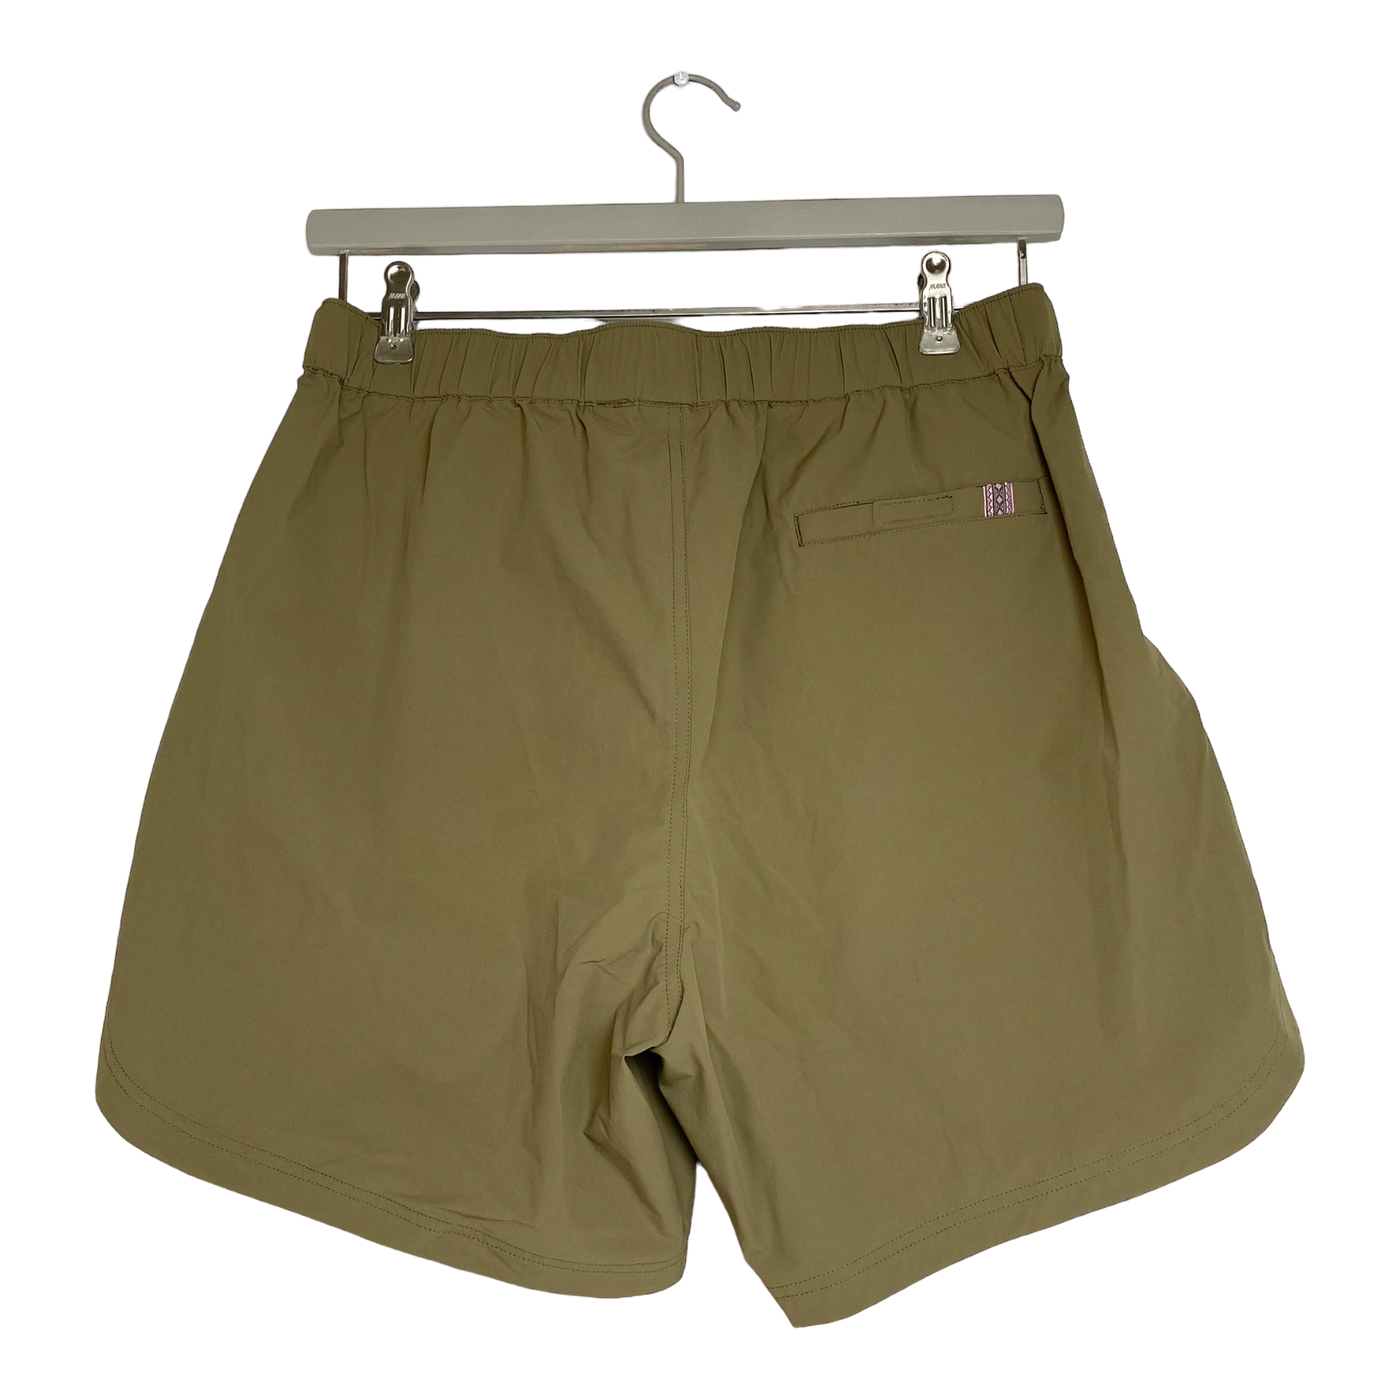 Varg espevik active shorts, covert green | woman L